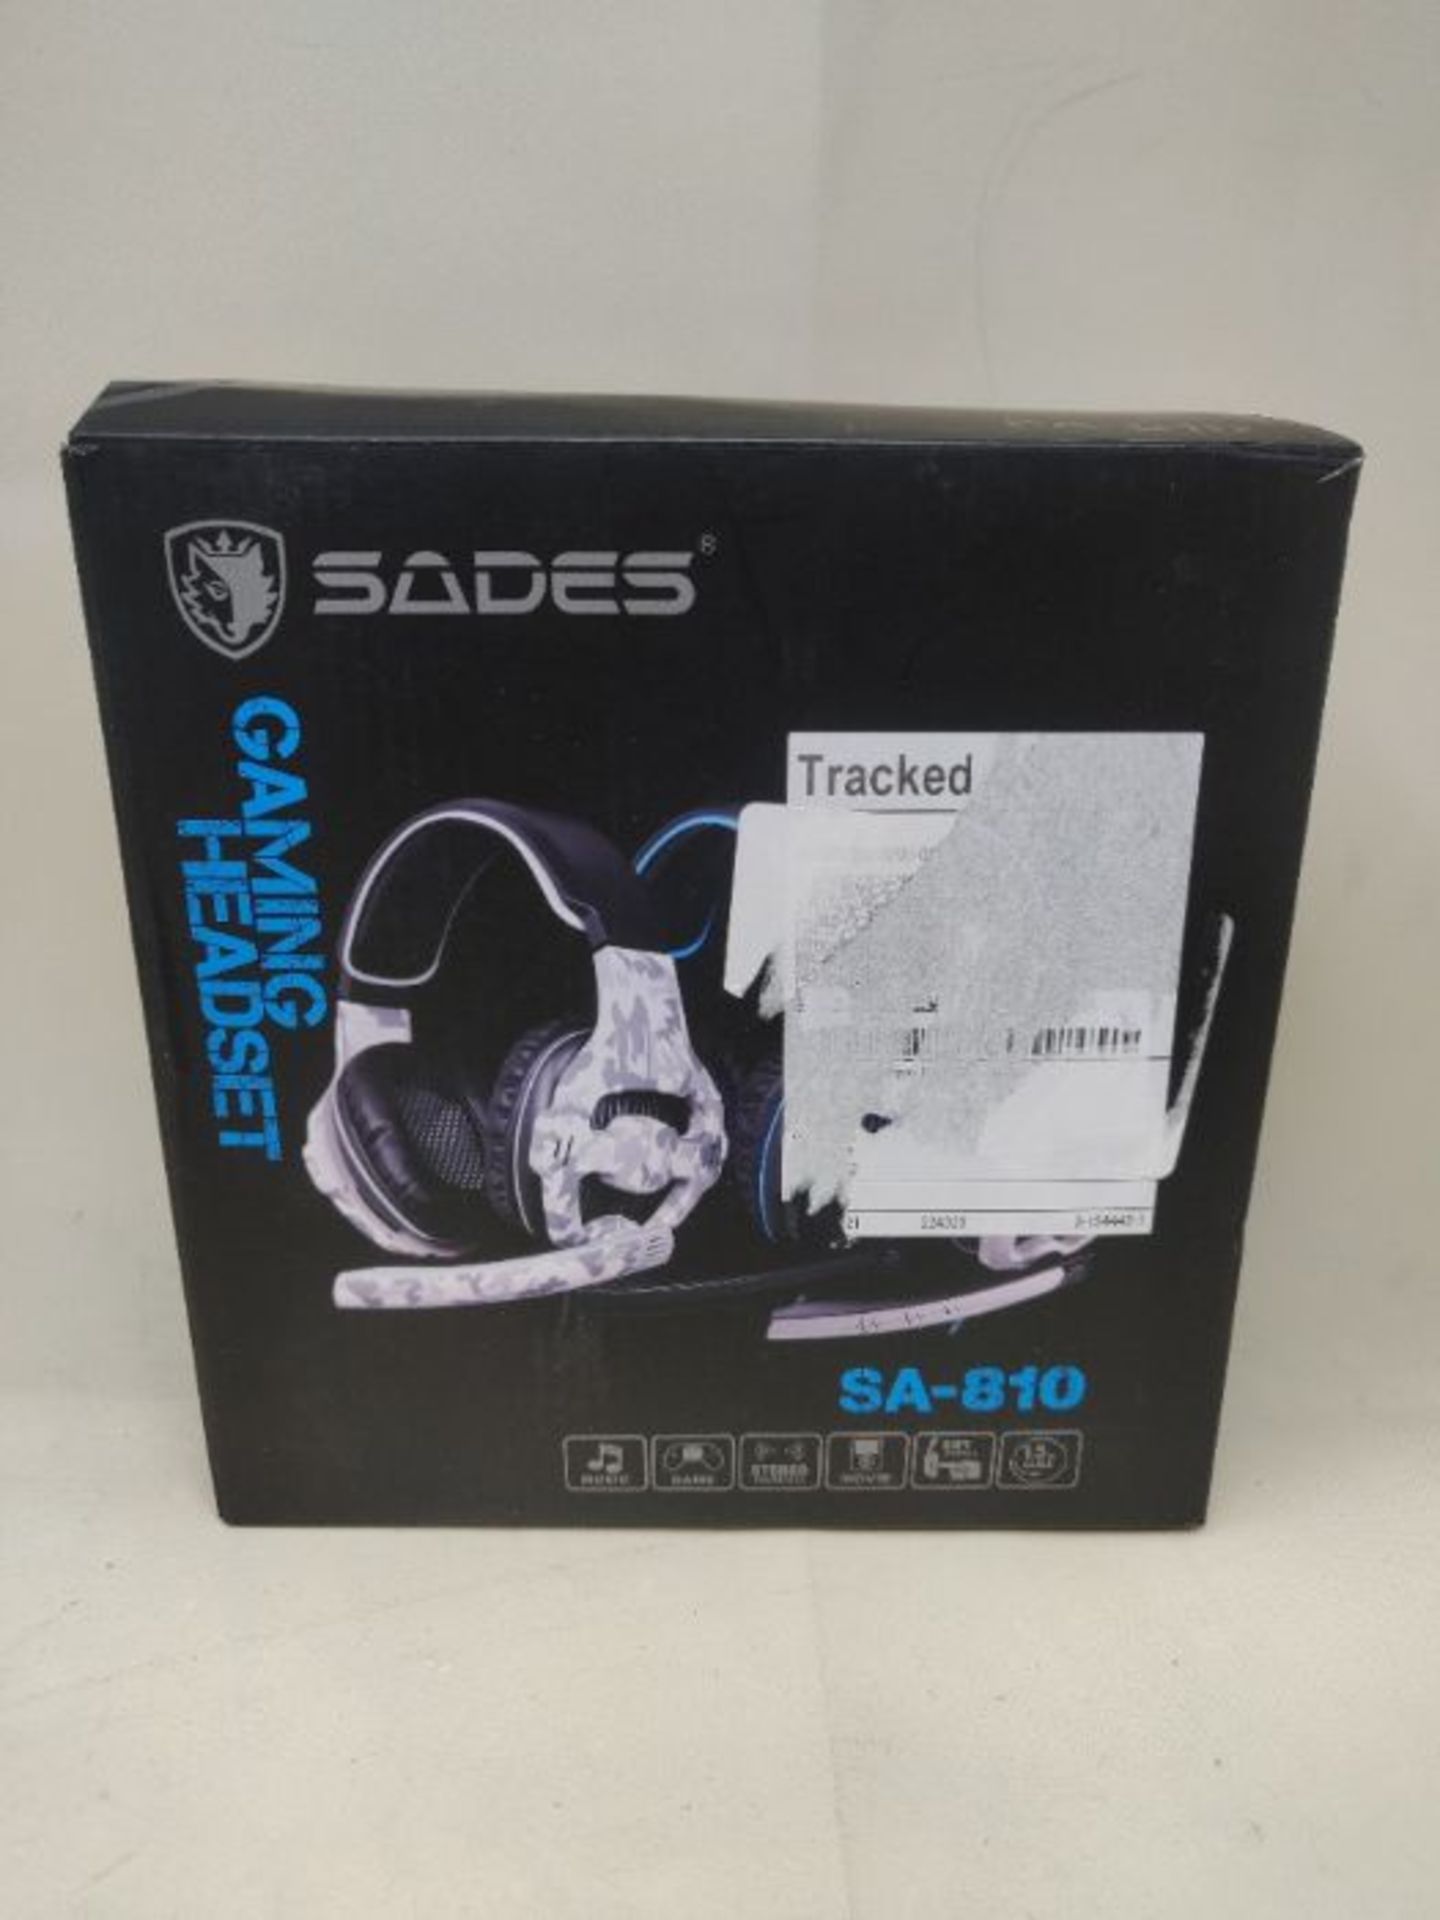 S�A�D�E�S� �S�A�8�1�0� �G�a�m�i�n�g� �H�e�a�d�s�e�t� �f�o�r� �N�e�w� �X�b�o�x� �O�n�e�,� �P�S�4� �C� - Image 2 of 3